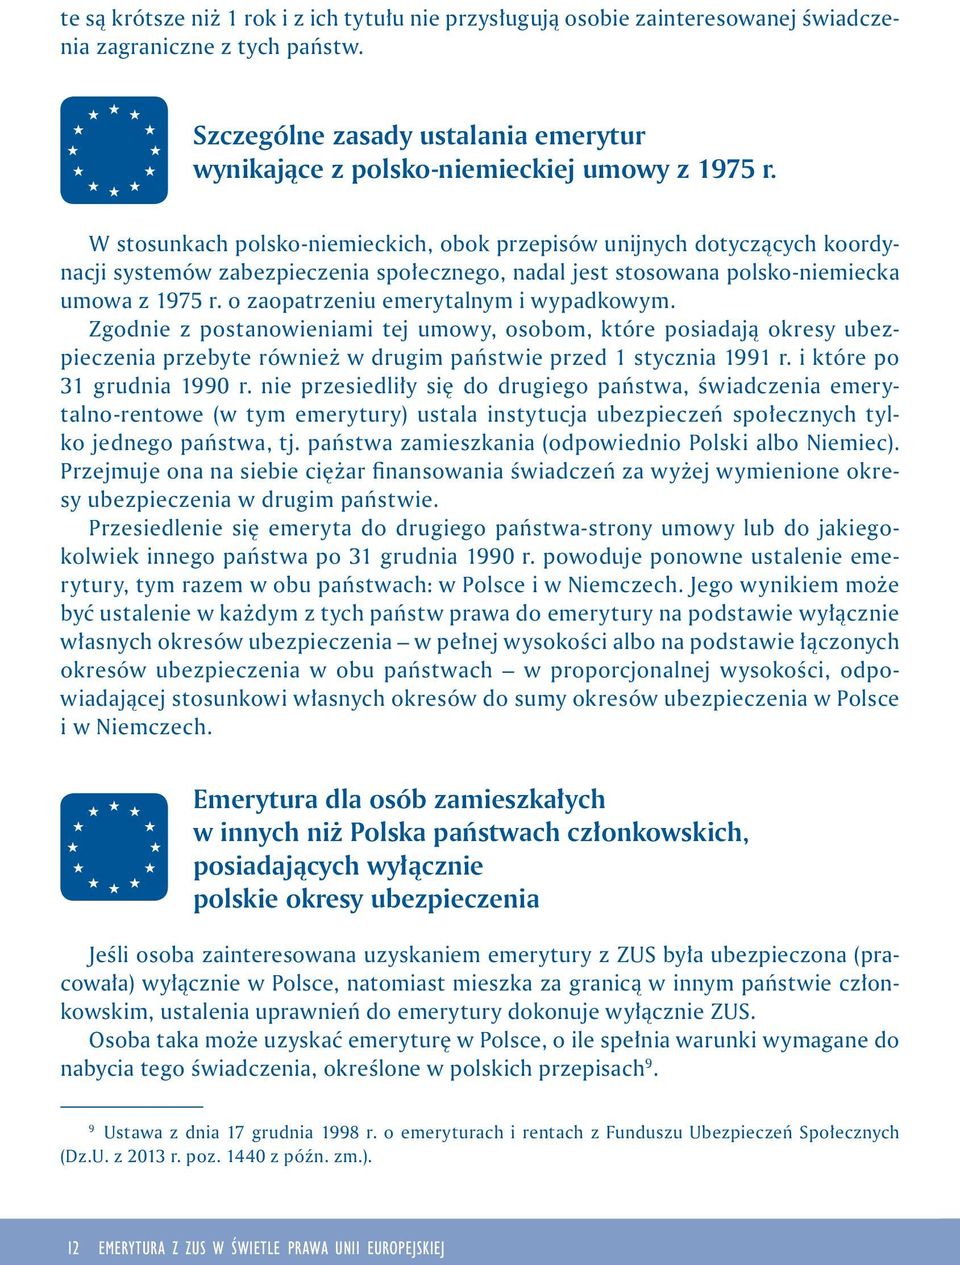 W stosunkach polsko-niemieckich, obok przepisów unijnych dotyczących koordynacji systemów zabezpieczenia społecznego, nadal jest stosowana polsko-niemiecka umowa z 1975 r.